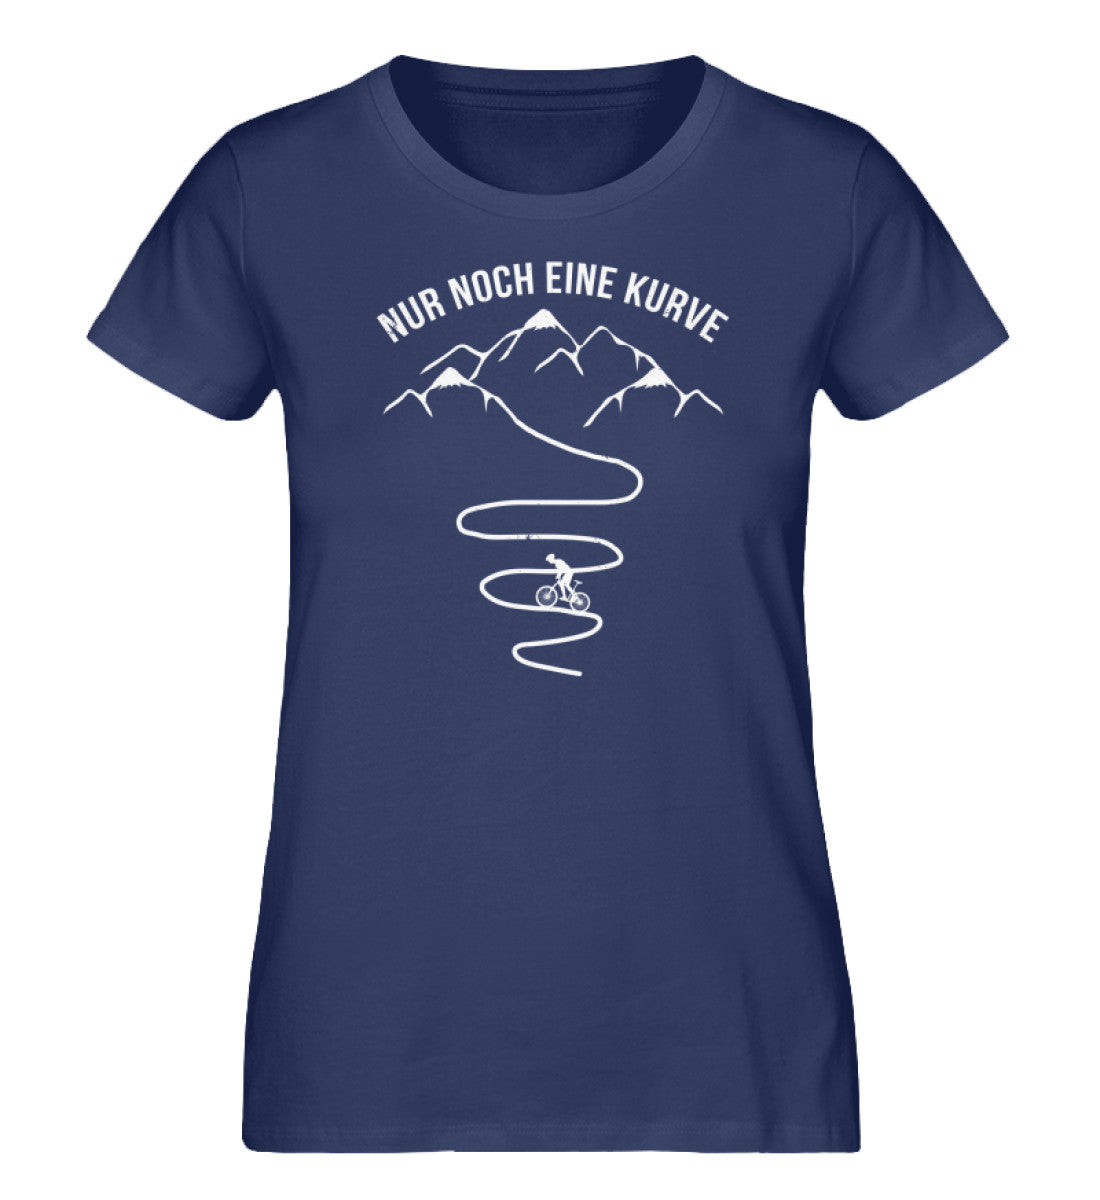 Nur noch eine Kurve und Radfahrer - Damen Organic T-Shirt fahrrad mountainbike Navyblau